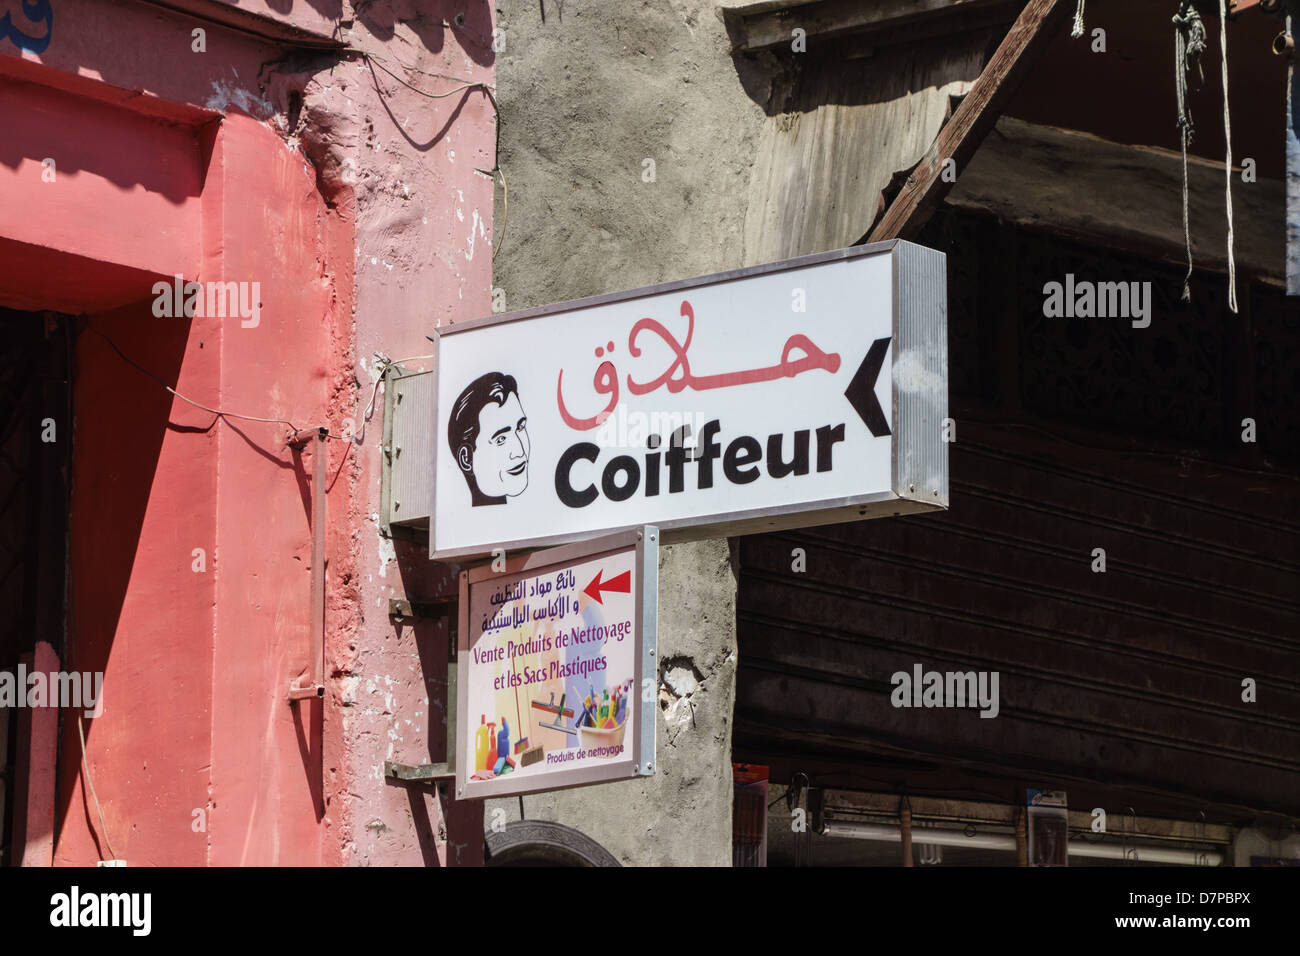 Marrakesh in the Kessabine Souk. Barber or hairdresser. Stock Photo